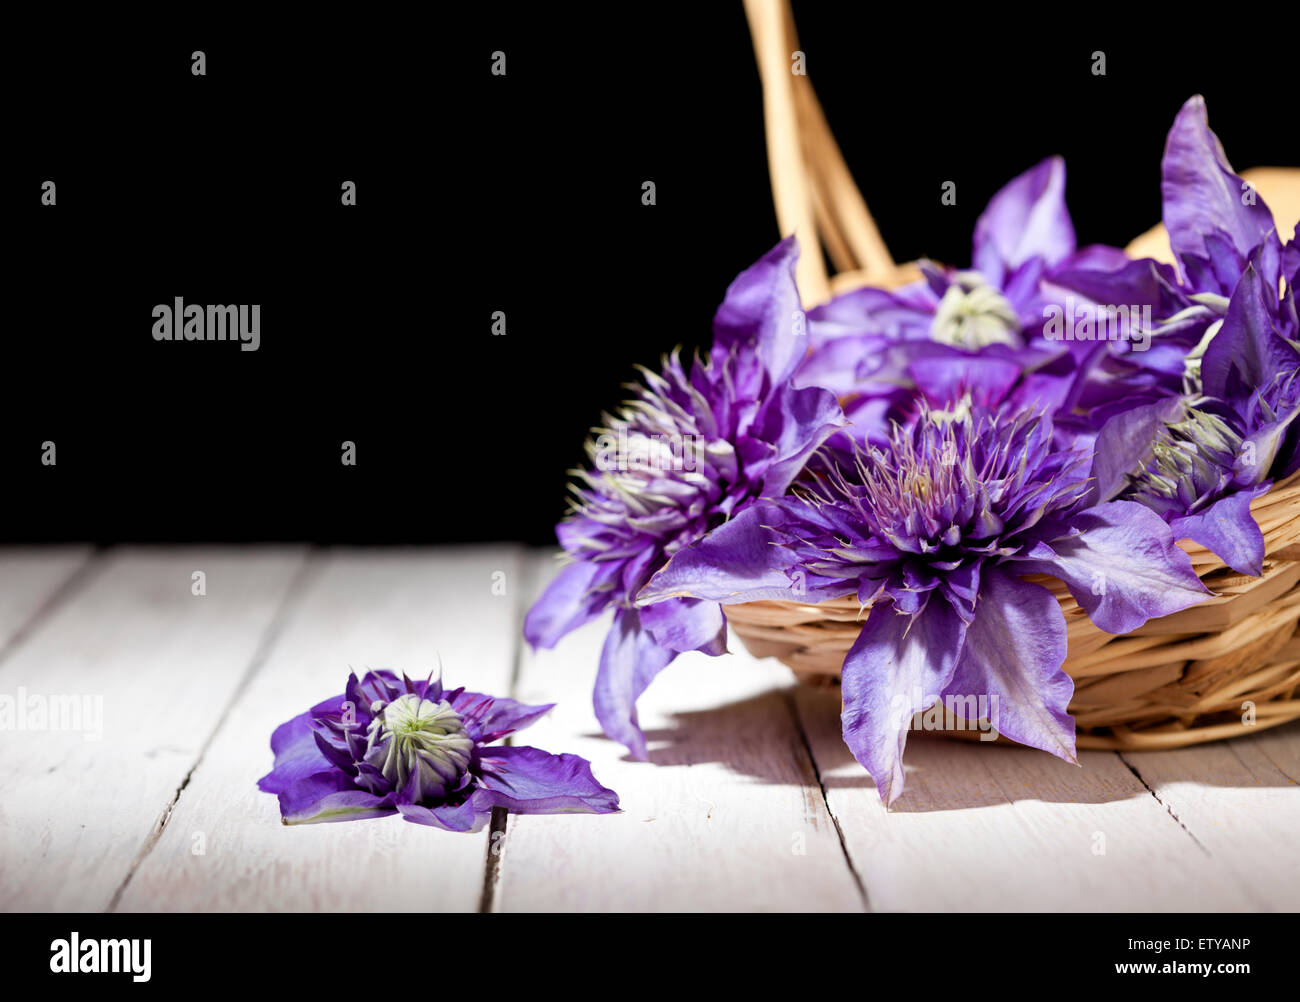 Clematis fleurs pourpres tombant de panier en osier Banque D'Images